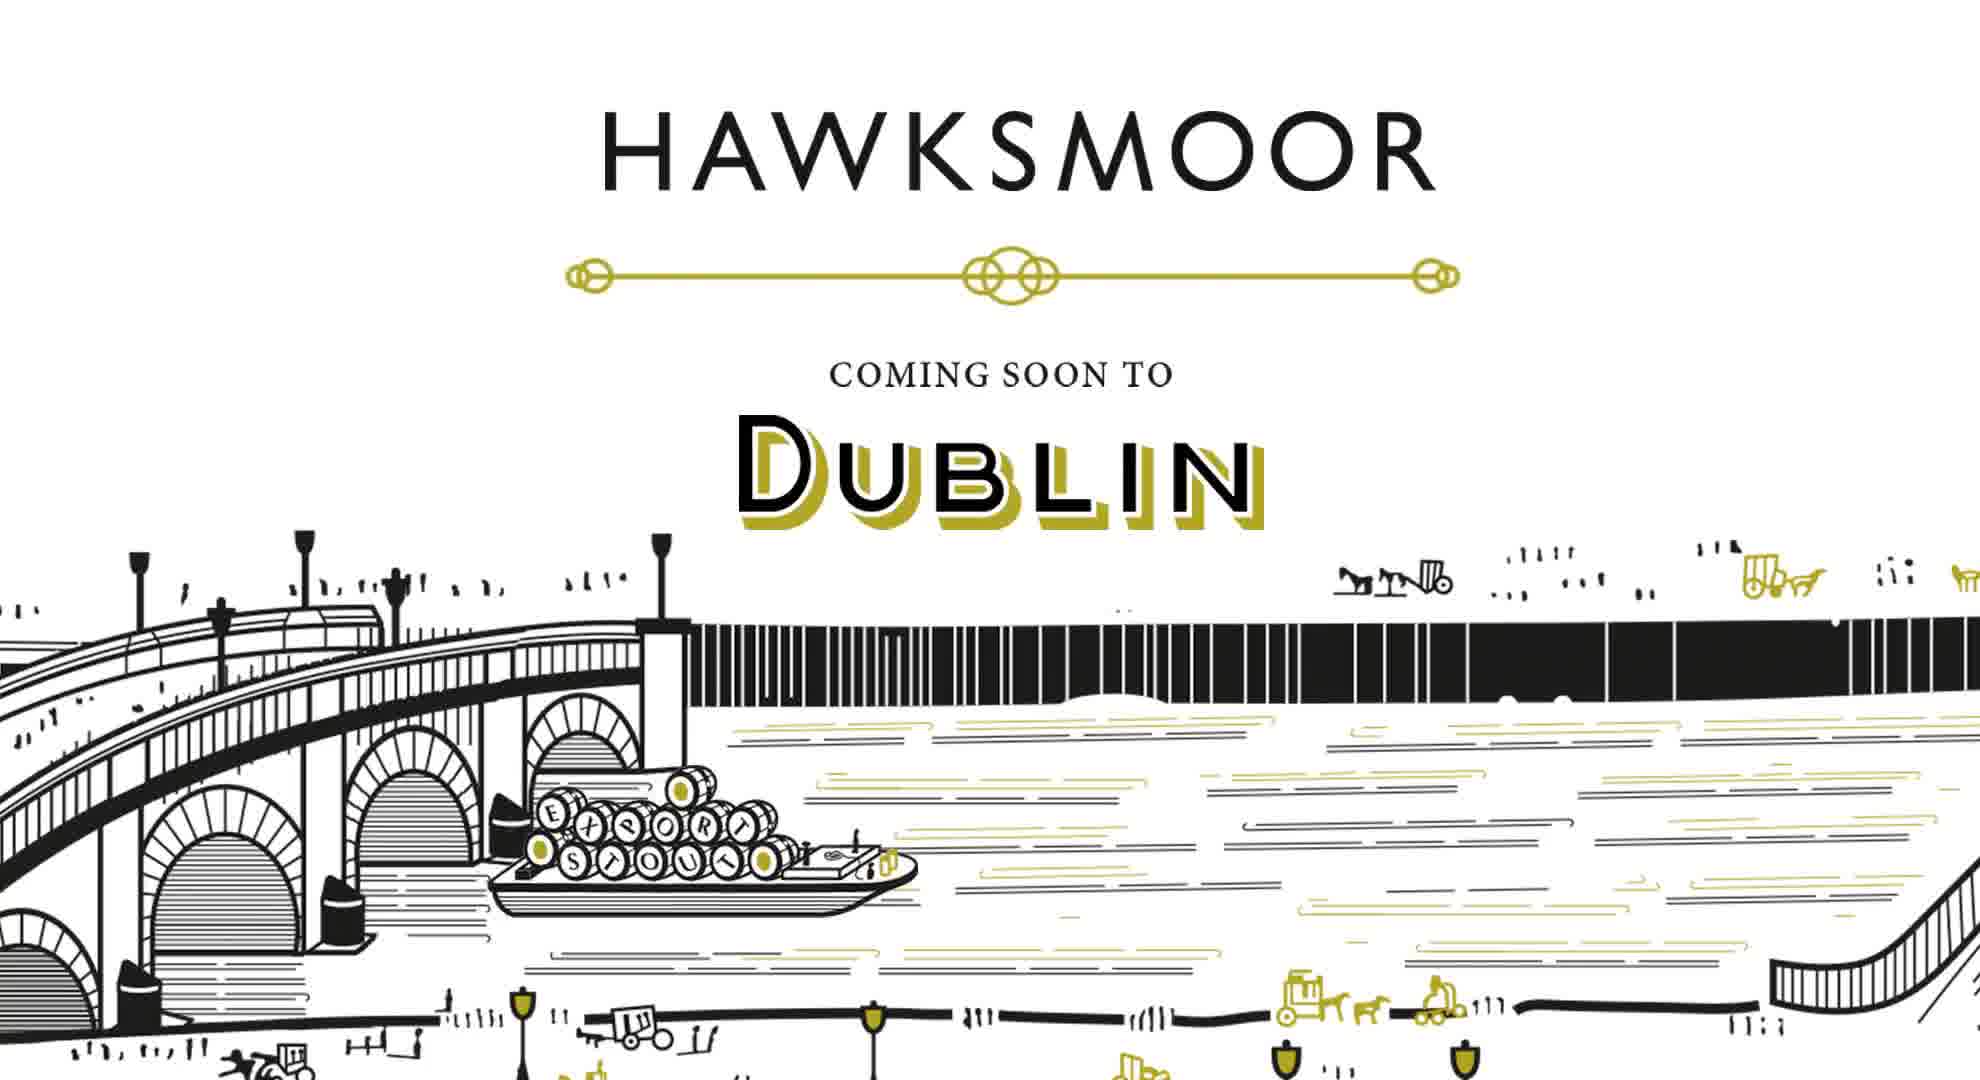 Coming soon - Hawksmoor Dublin